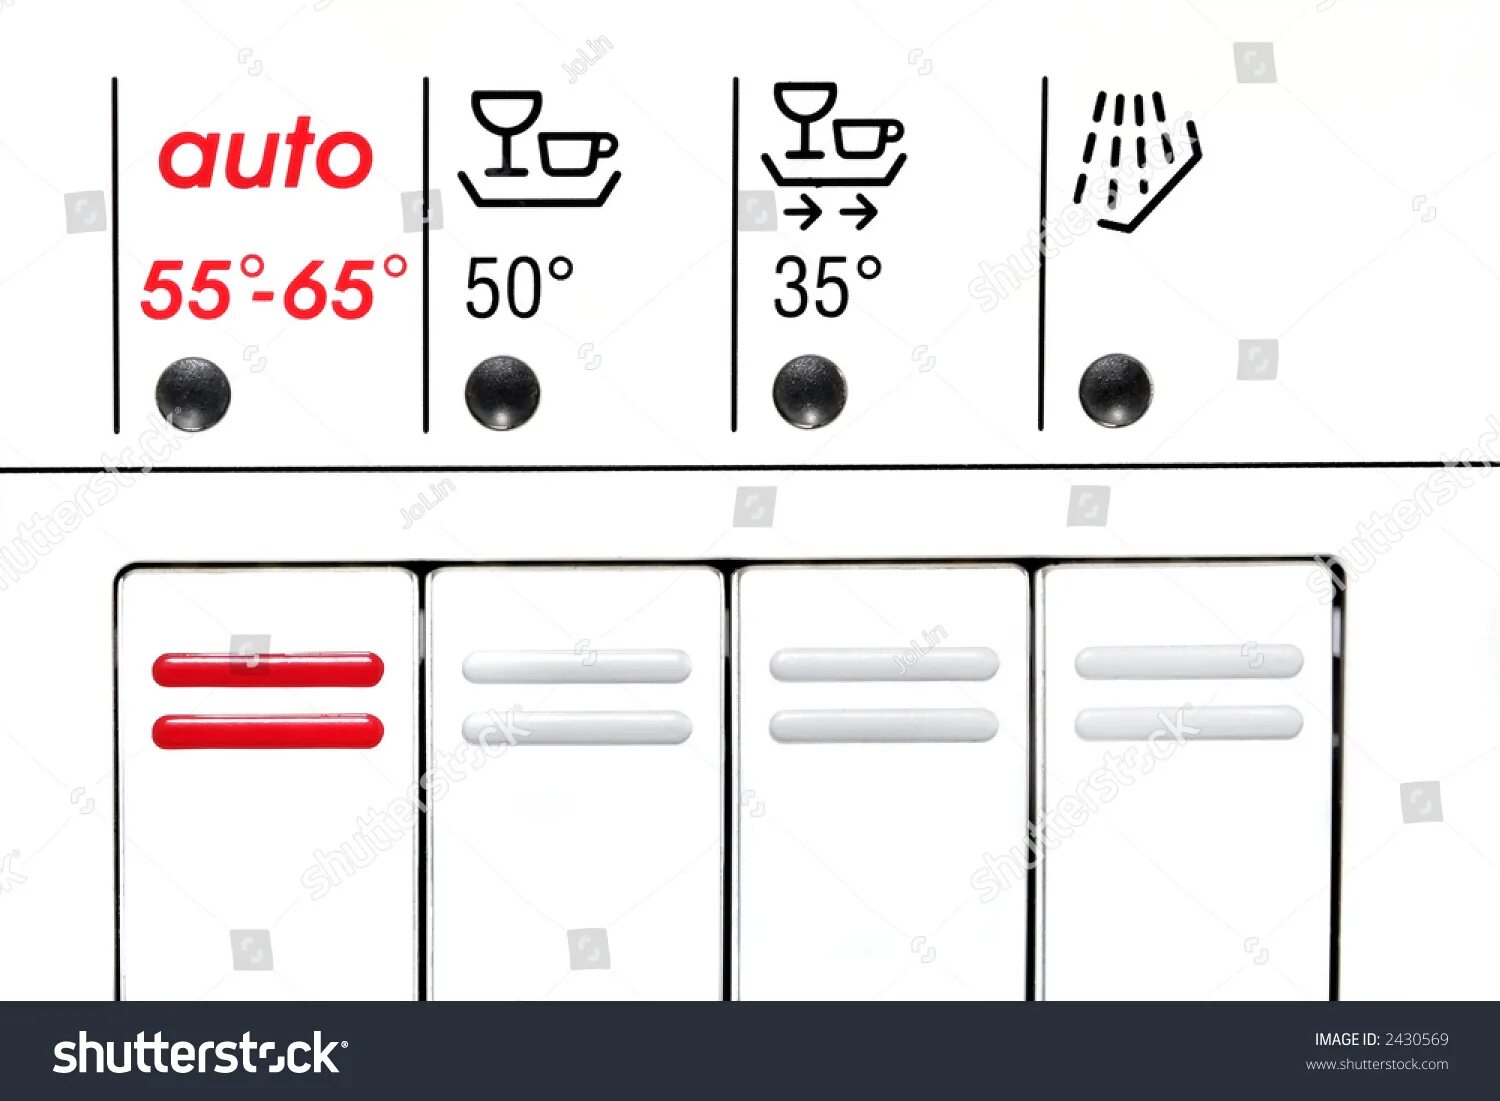 Посудомойка бош кнопки. Значки на посудомойке бош. Значки на посудомоечной машине Bosch. Посудомойка бош панель управления. Бош посудомоечная машина значки на панели.